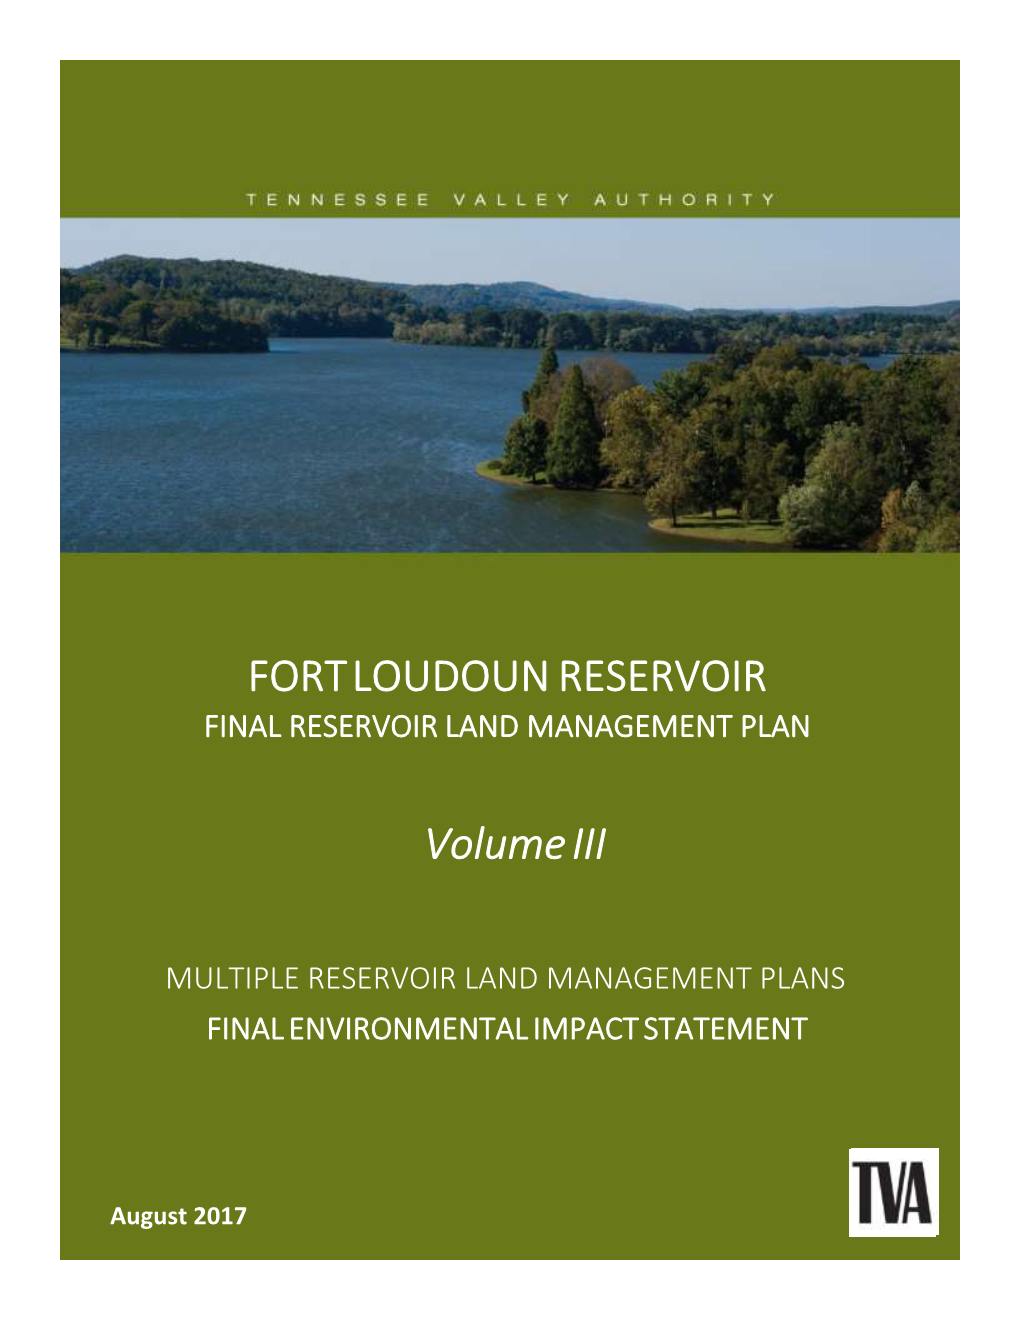 Fort Loudoun Reservoir Land Management Plan